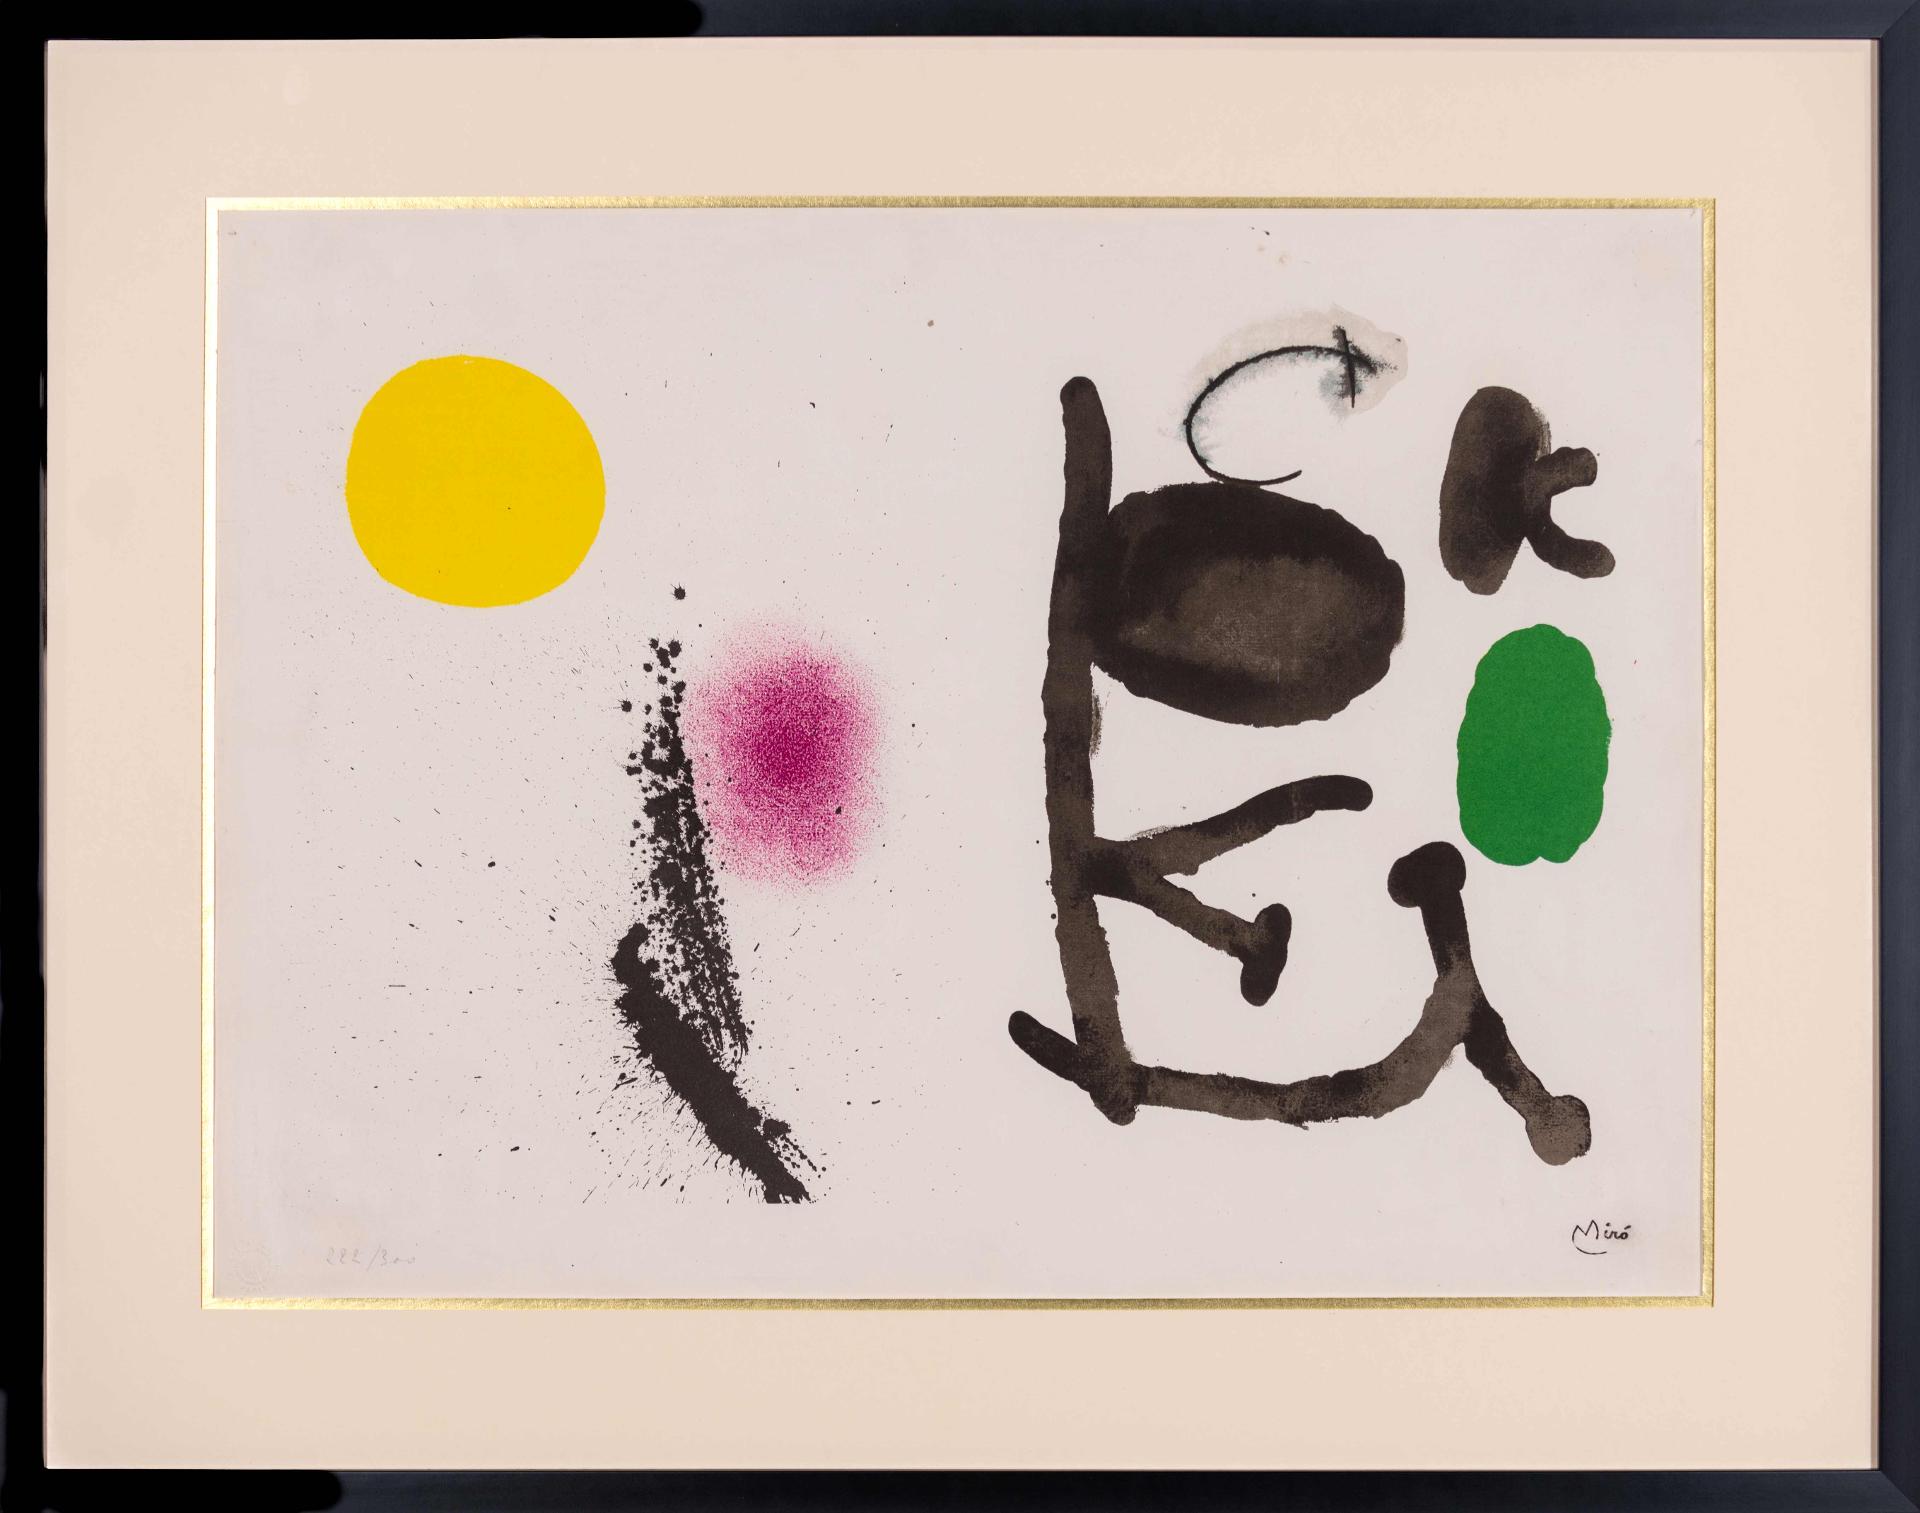 Joan Miró (1893-1983) - Violet et jaune, 1961